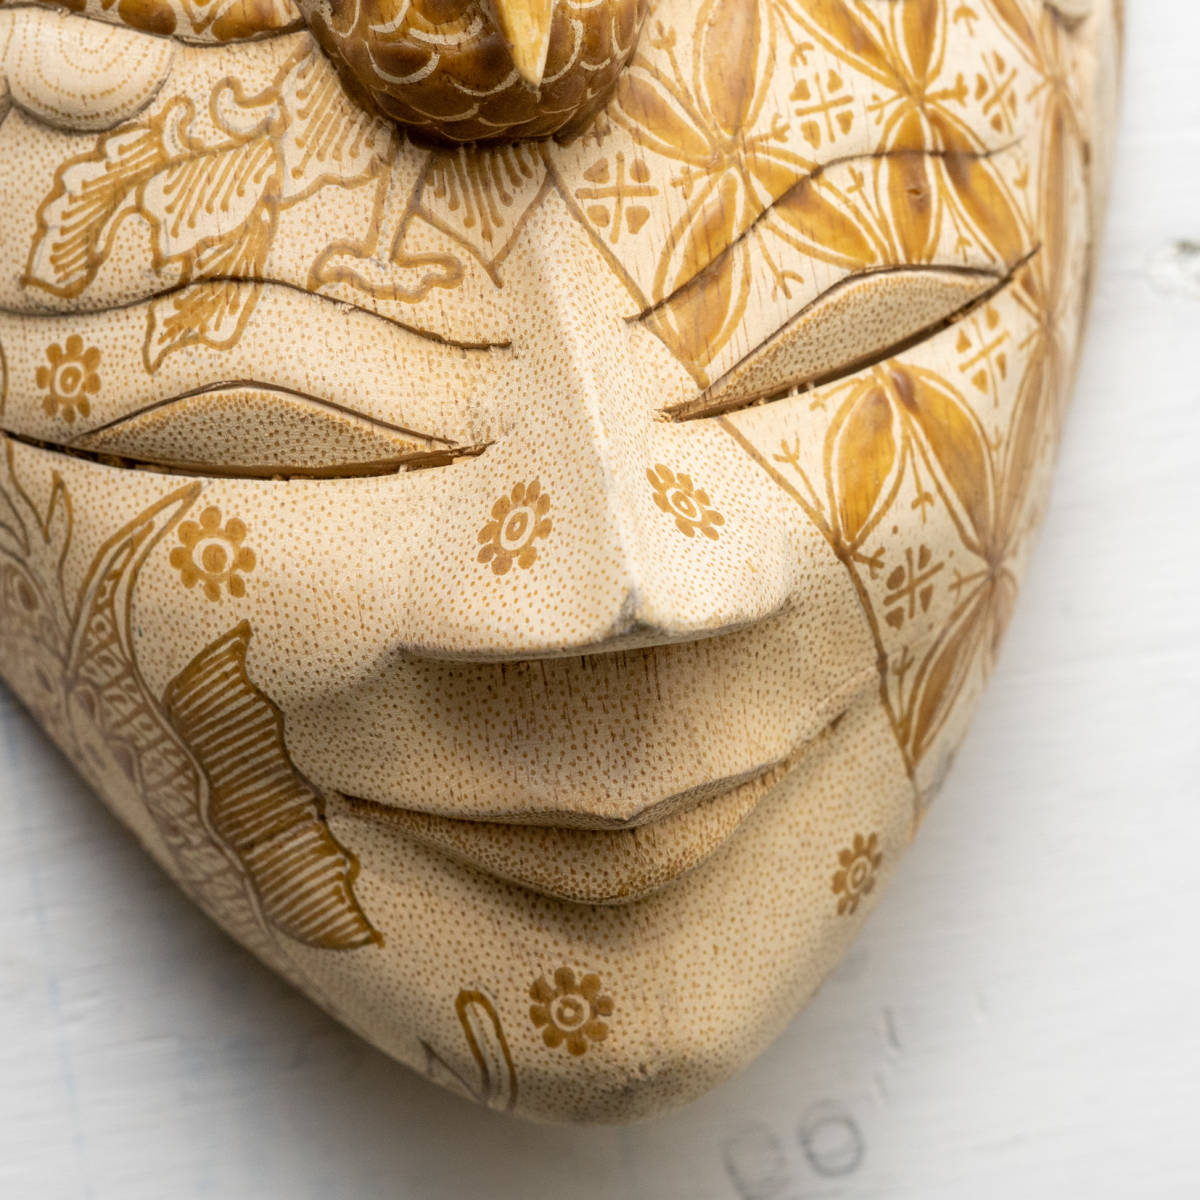 木彫り マスク 仮面 木彫 置物 オブジェ 民芸 木製彫刻_画像2